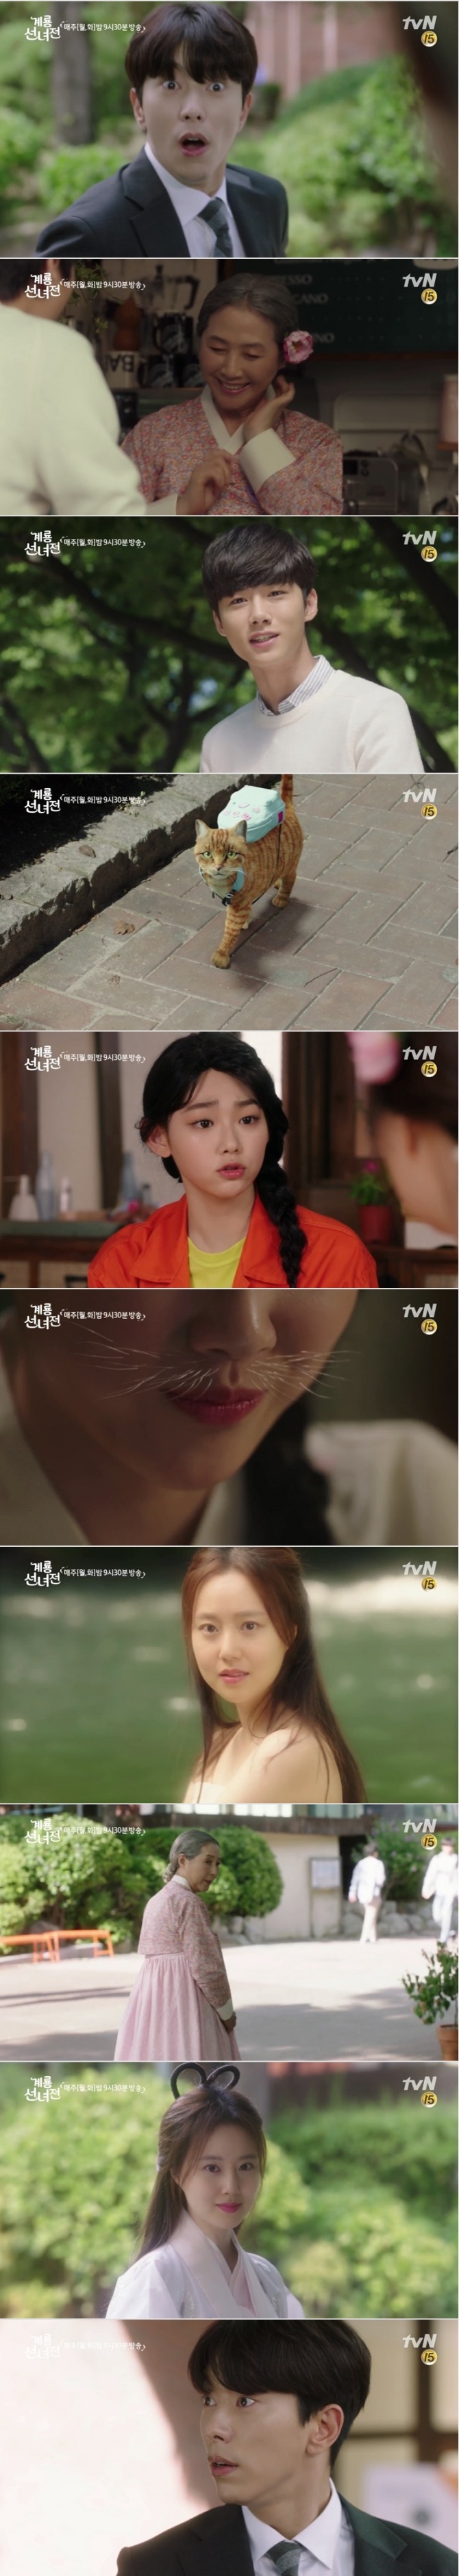 6일 오후 방송되는 tvN 월화드라마 '계룡선녀전' 2회에서는 정이현(윤현민 분)이 나무꾼을 찾기 위해 서울에서 바리스타를 시작한 선녀 선옥남(고두심, 문채원 분)이 젊은 선녀와 노파를 오가며 자유자재로 변신하는 것을 보고 멘붕에 빠지는 반전이 그려진다.사진=tvN 영상 캡처